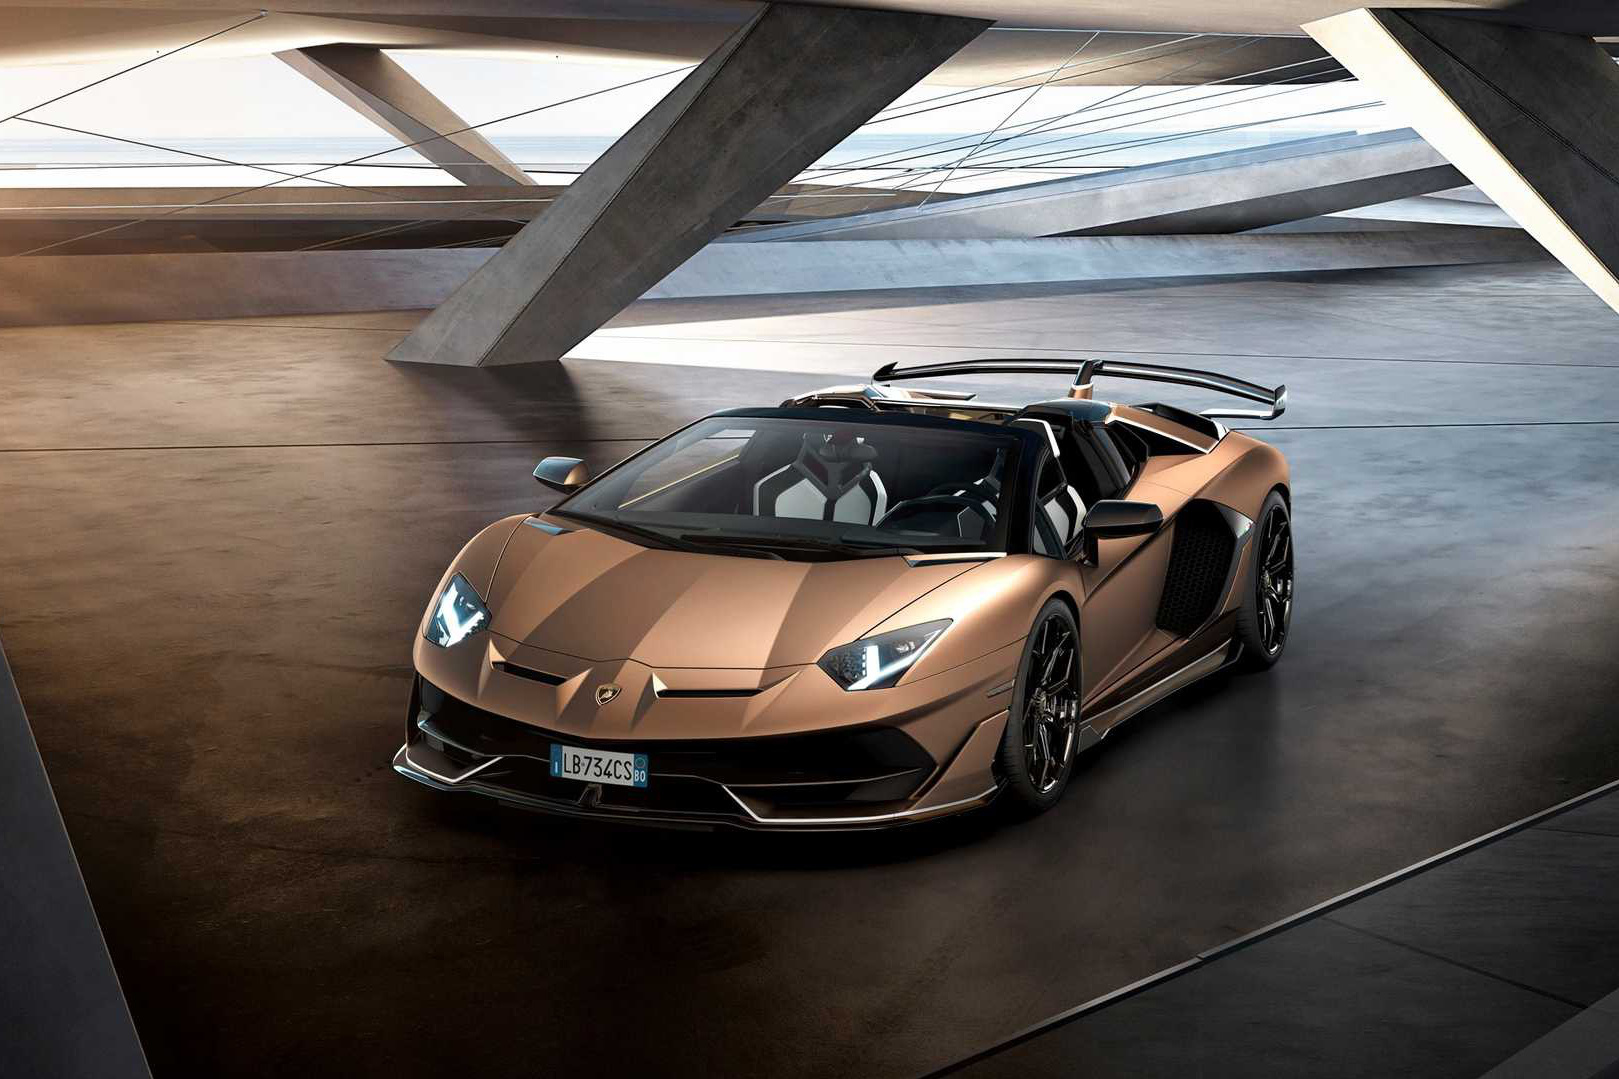 Siêu xe kế nhiệm Lamborghini Aventador lộ thêm thông tin: Có bản hybrid để dần chuyển sang thuần điện